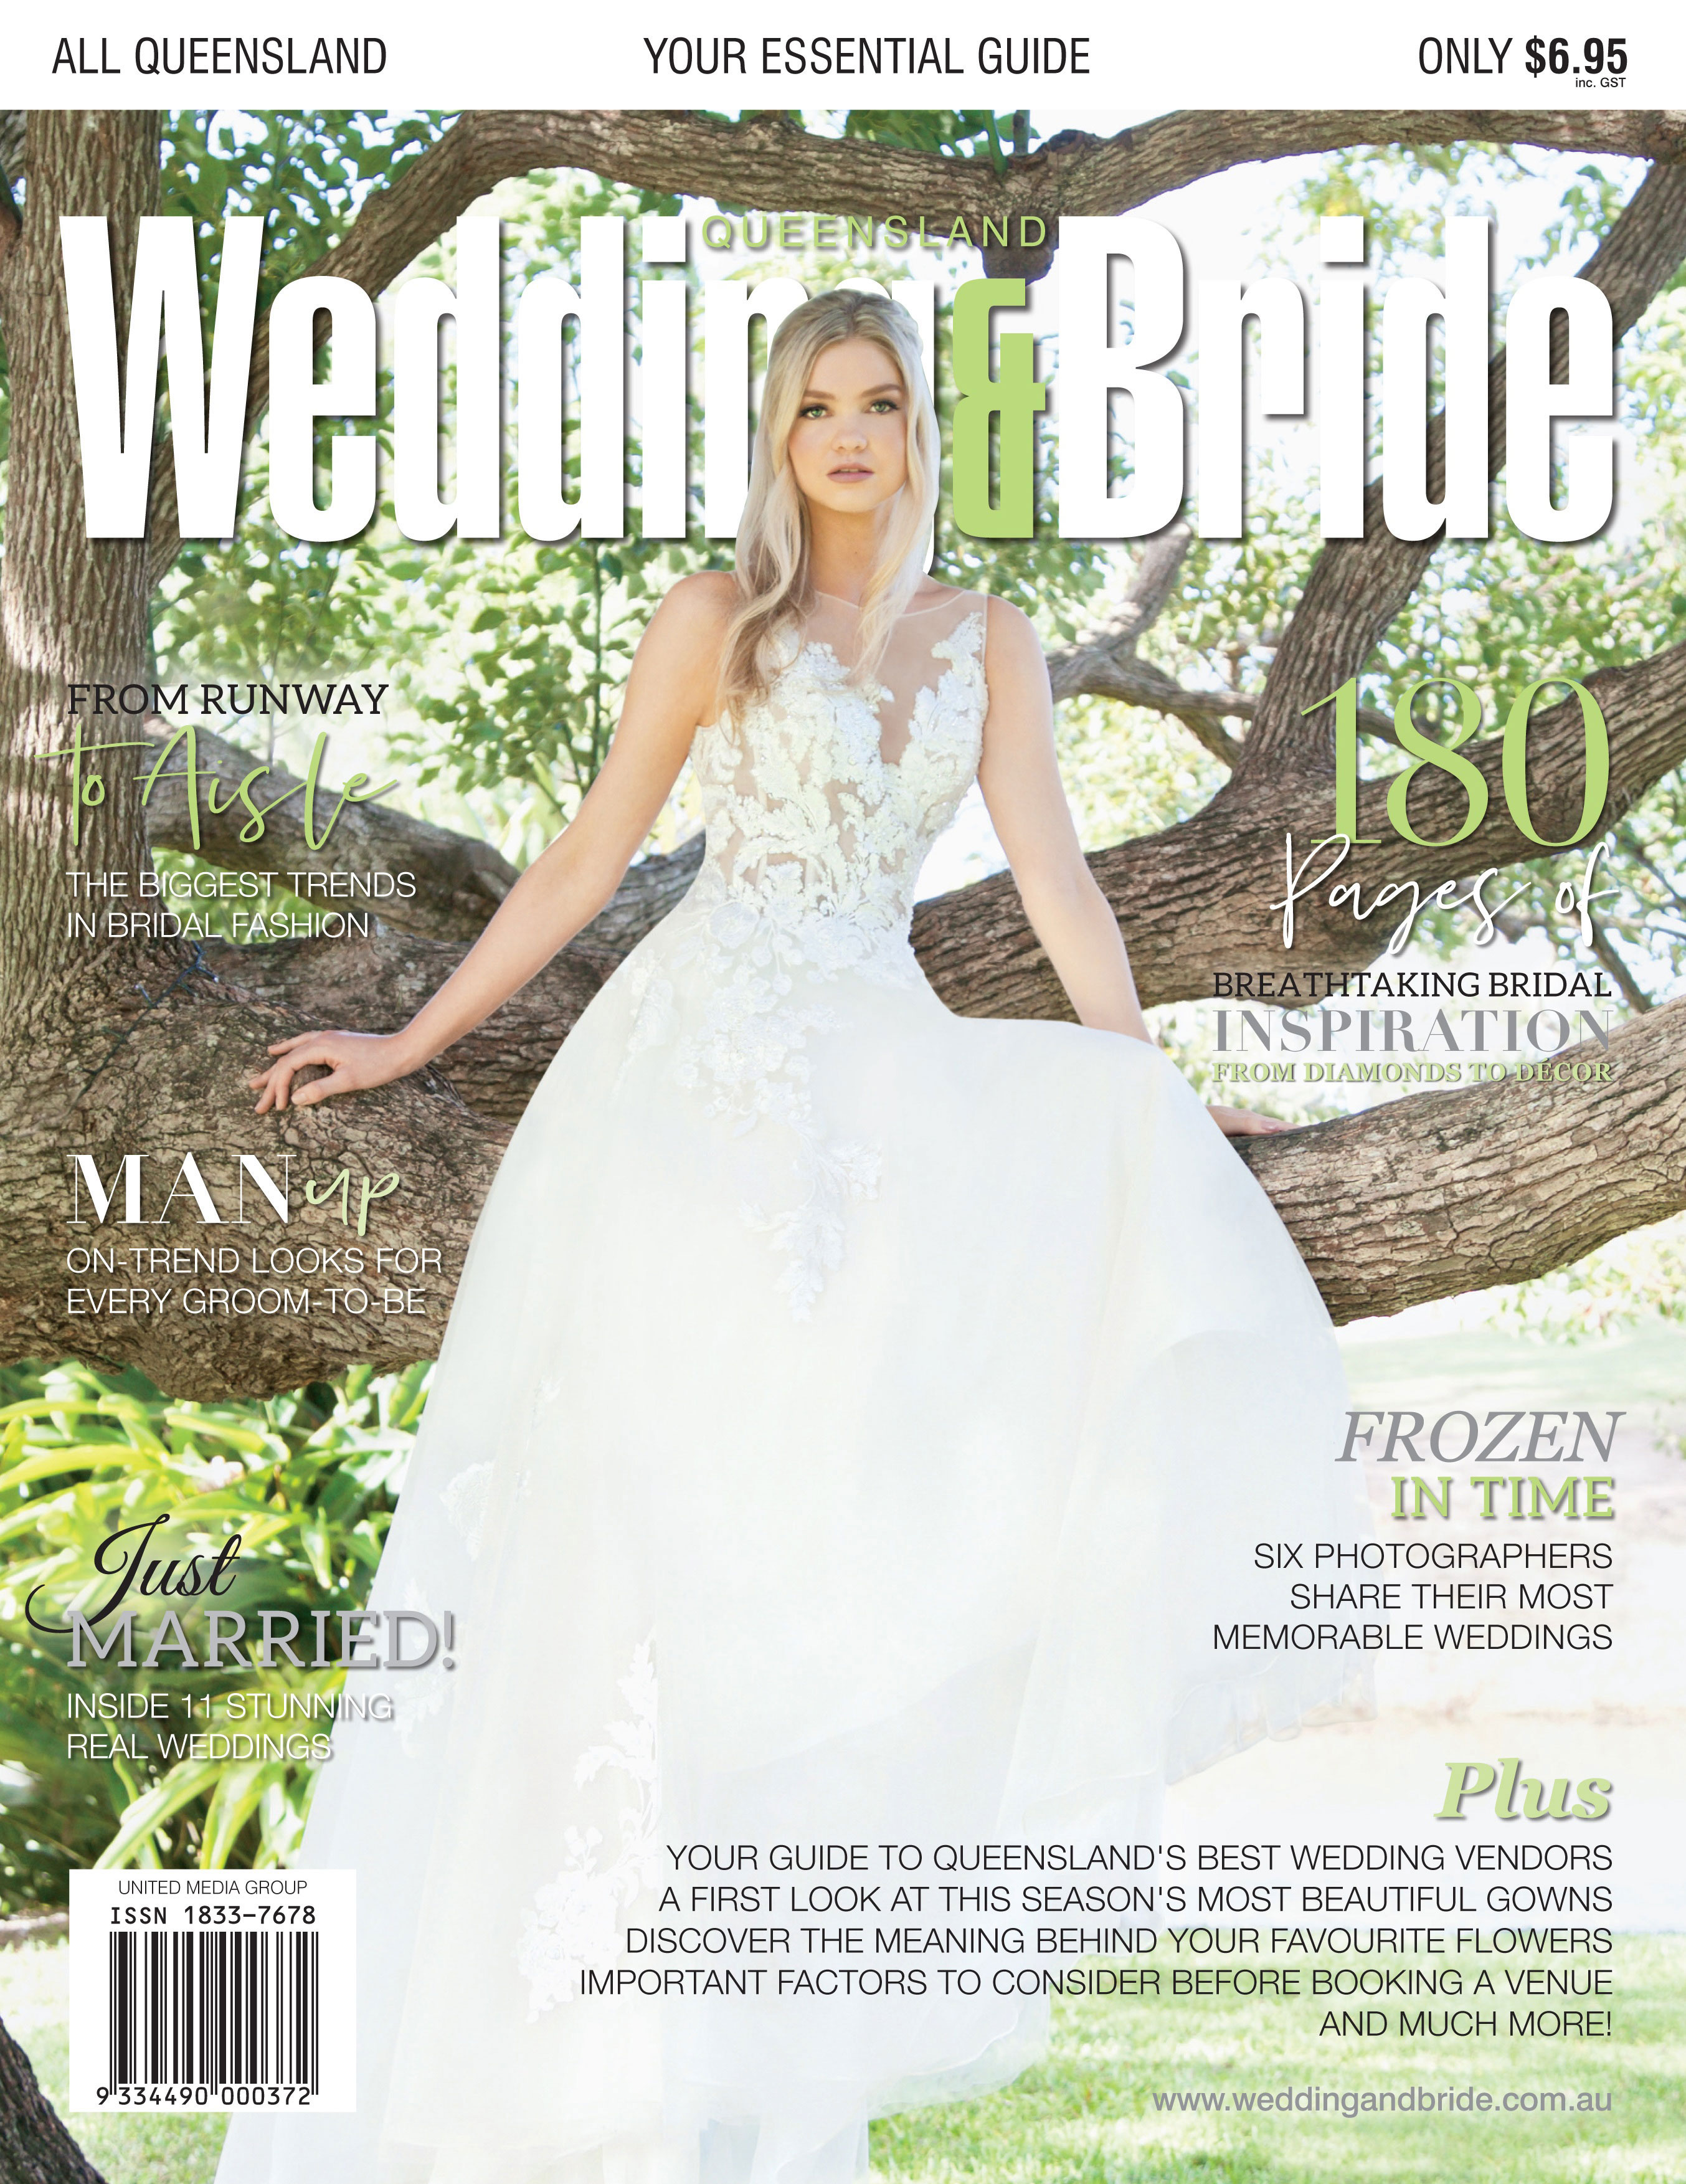 Wedding & Bride Magazines United Media Group